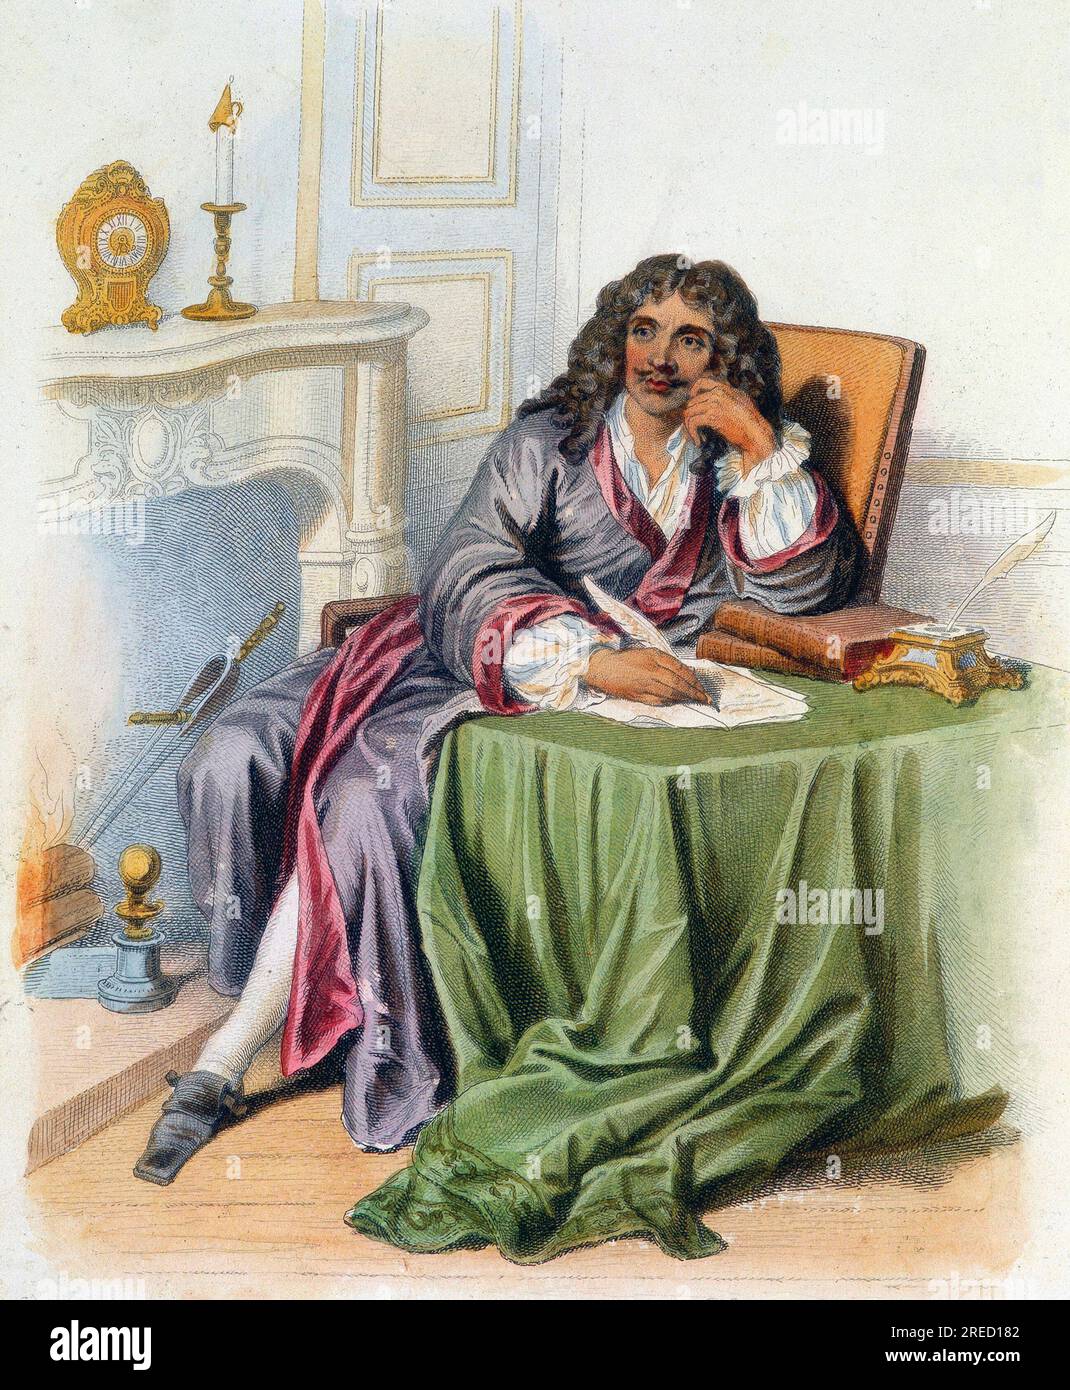 Portrait de Jean-Baptiste Poquelin dit Moliere, auteur dramatique et comedien francais (1622-1673) - in 'Le Plutarque francais', Ed. Mennechet, 1844-1847 Stock Photo